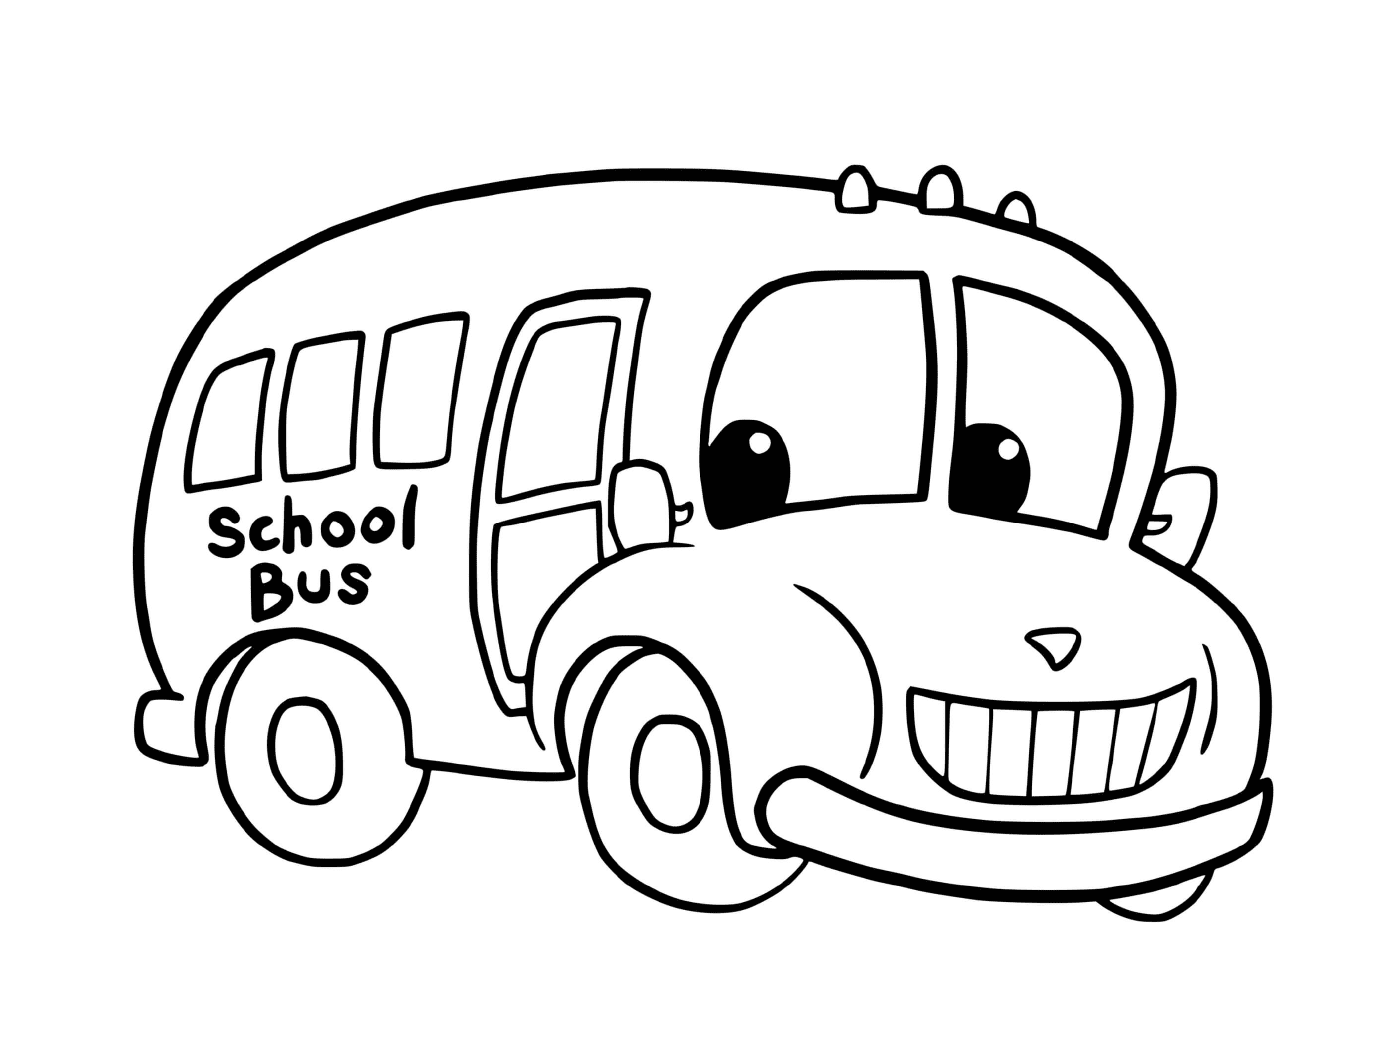  School buses 